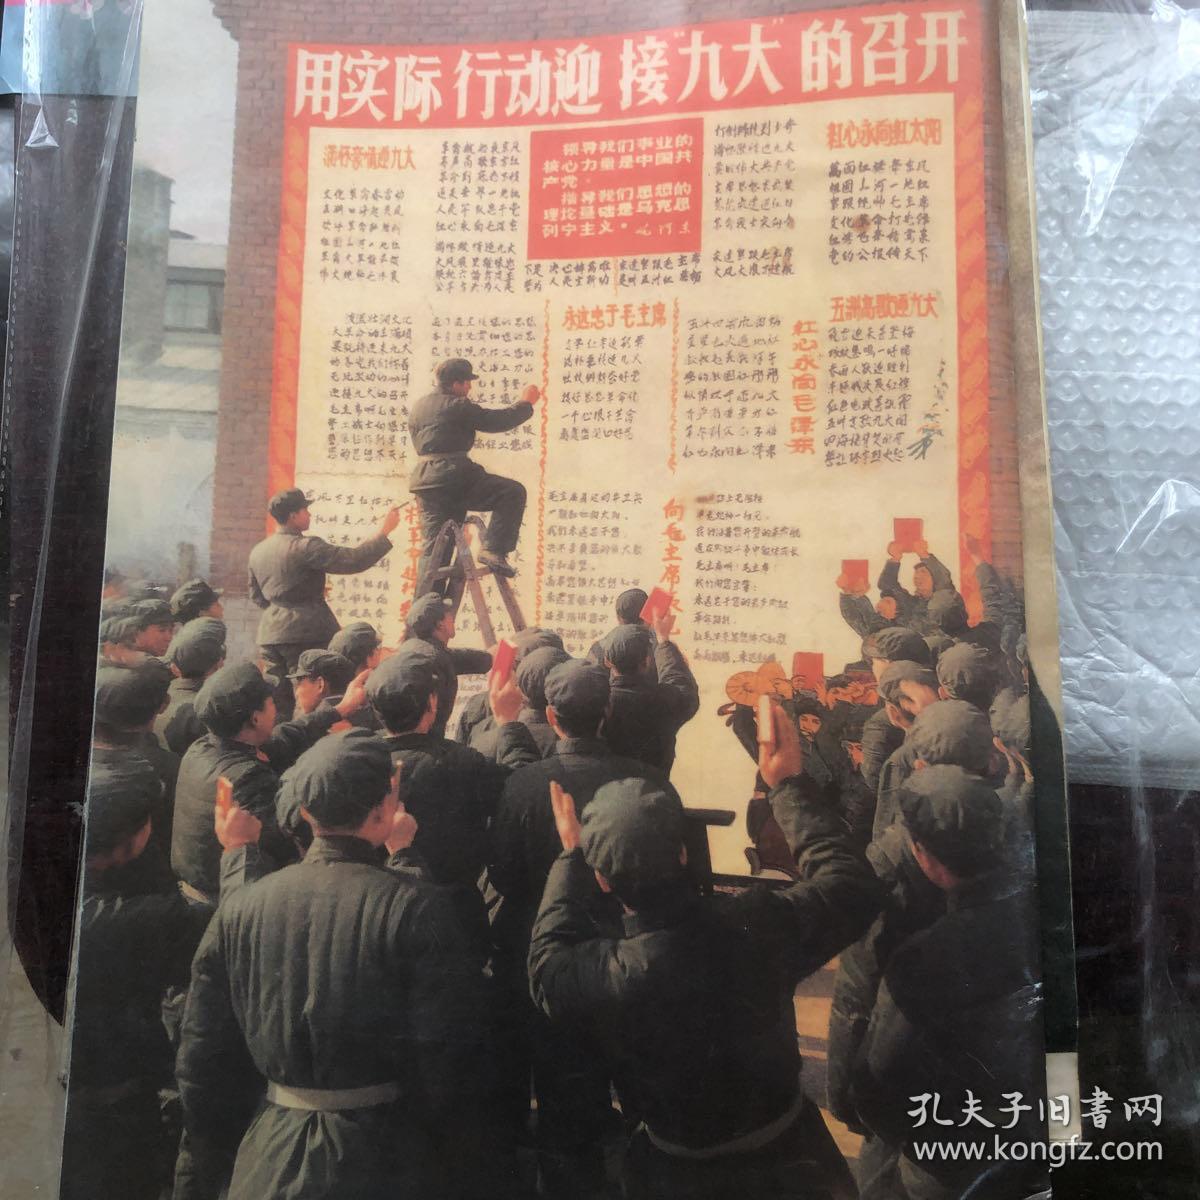 解放军画报1969-1特刊